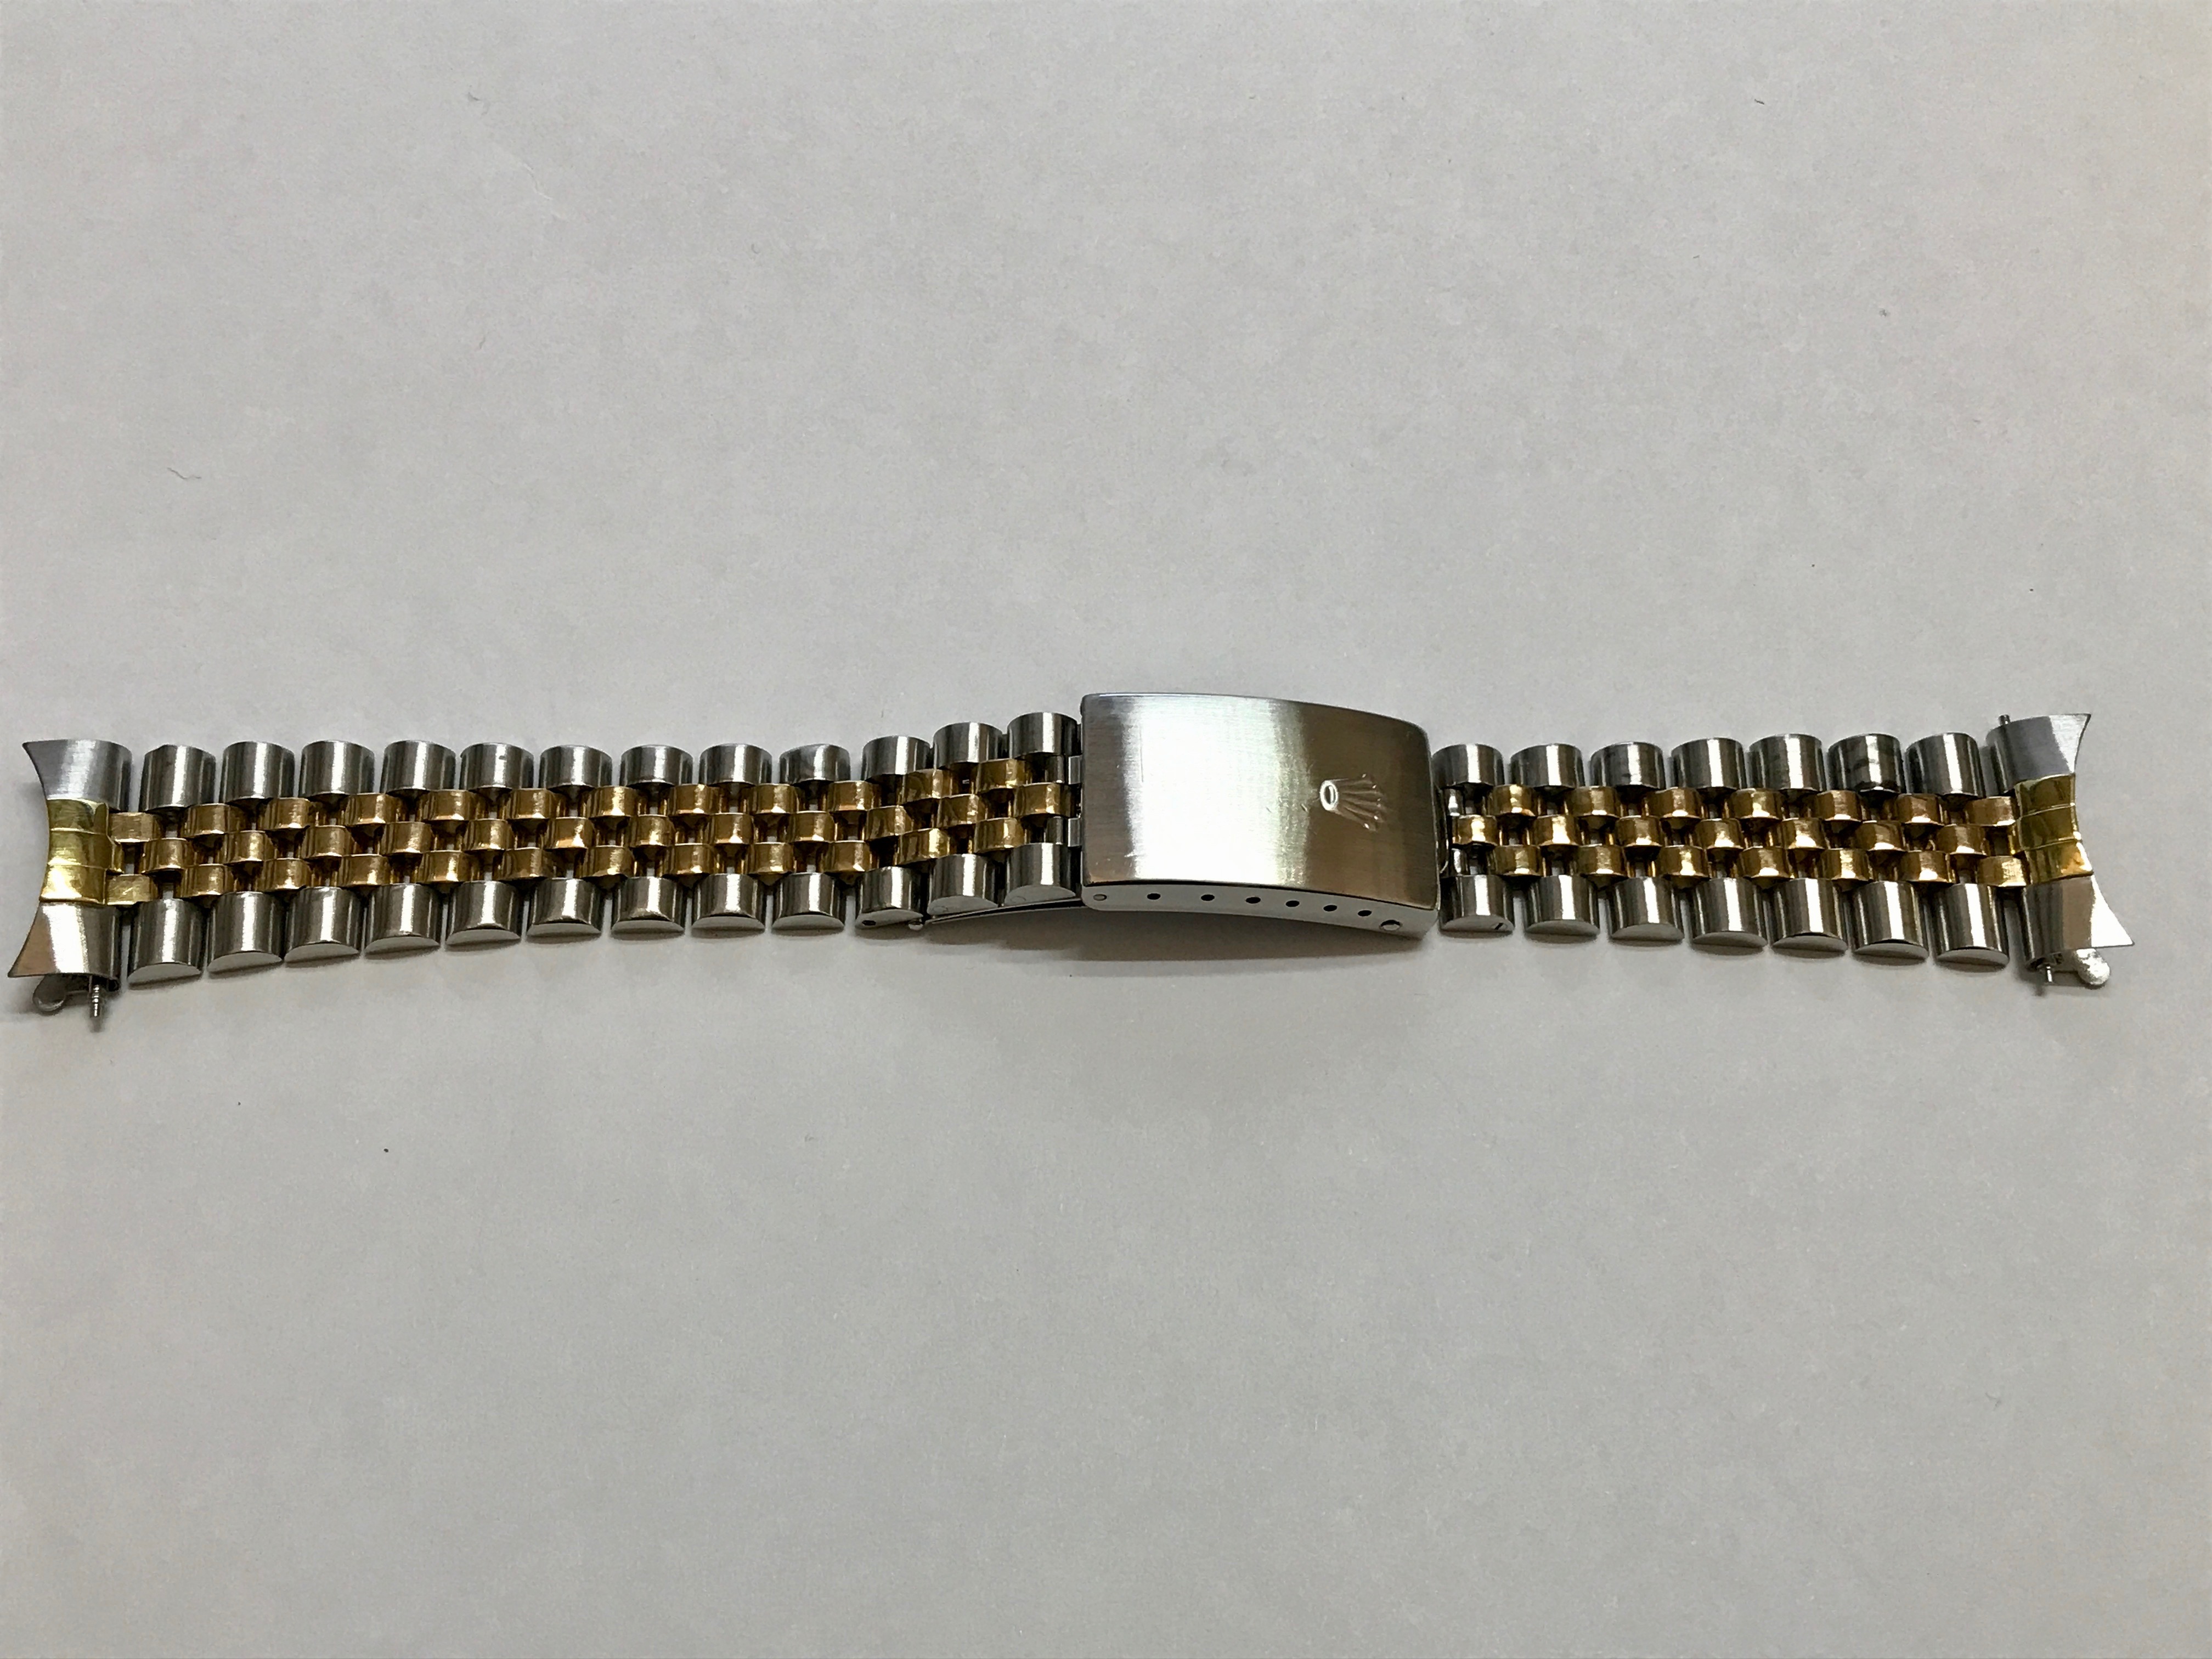 Bracelet repair